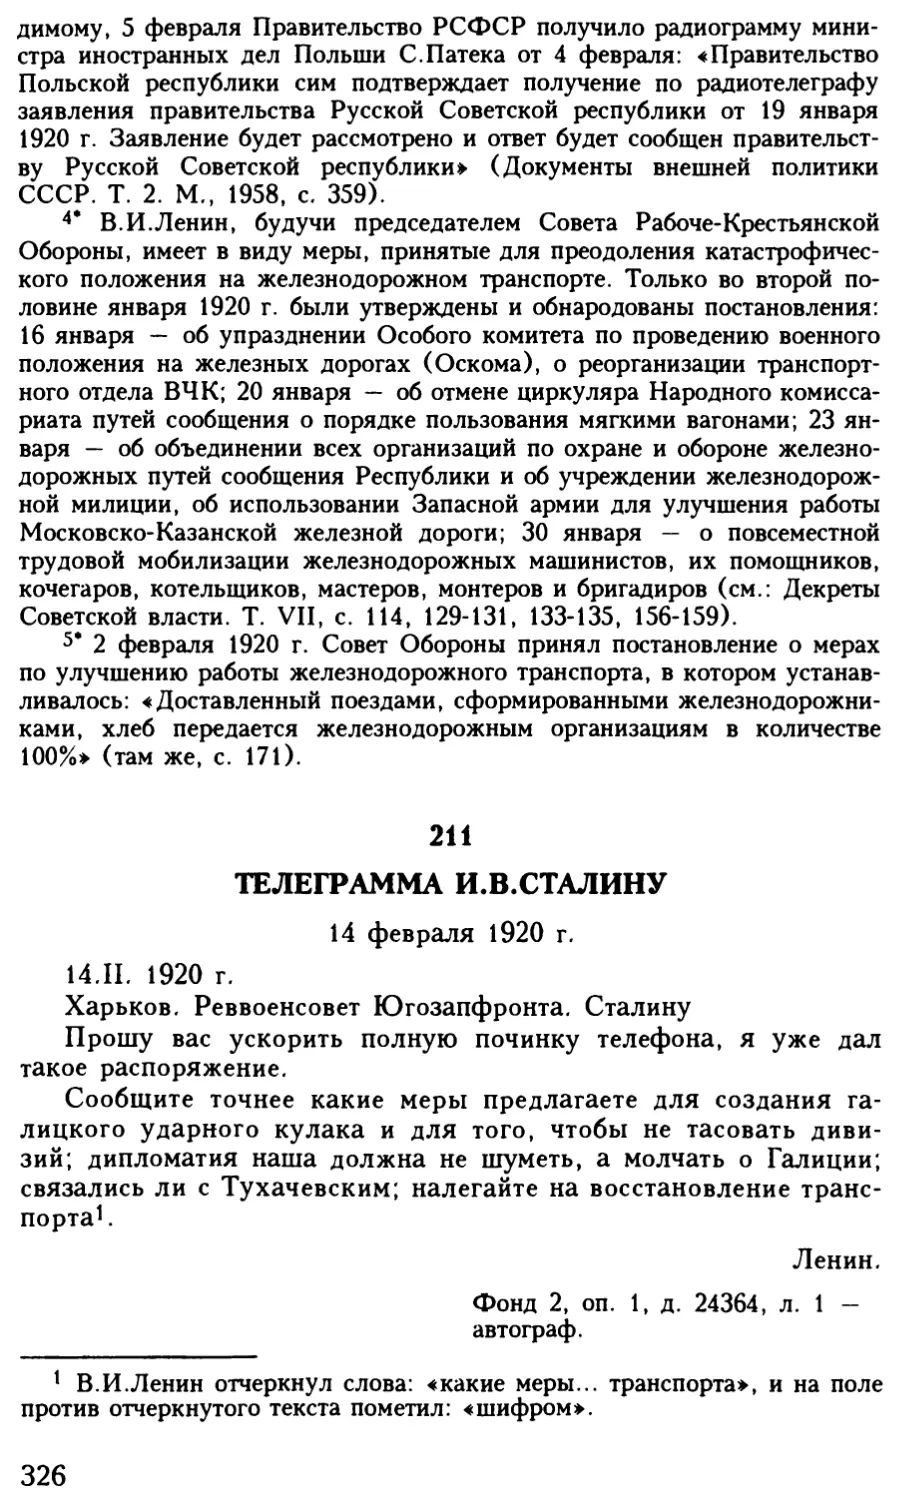 211. Телеграмма И.В.Сталину. 14 февраля 1920 г